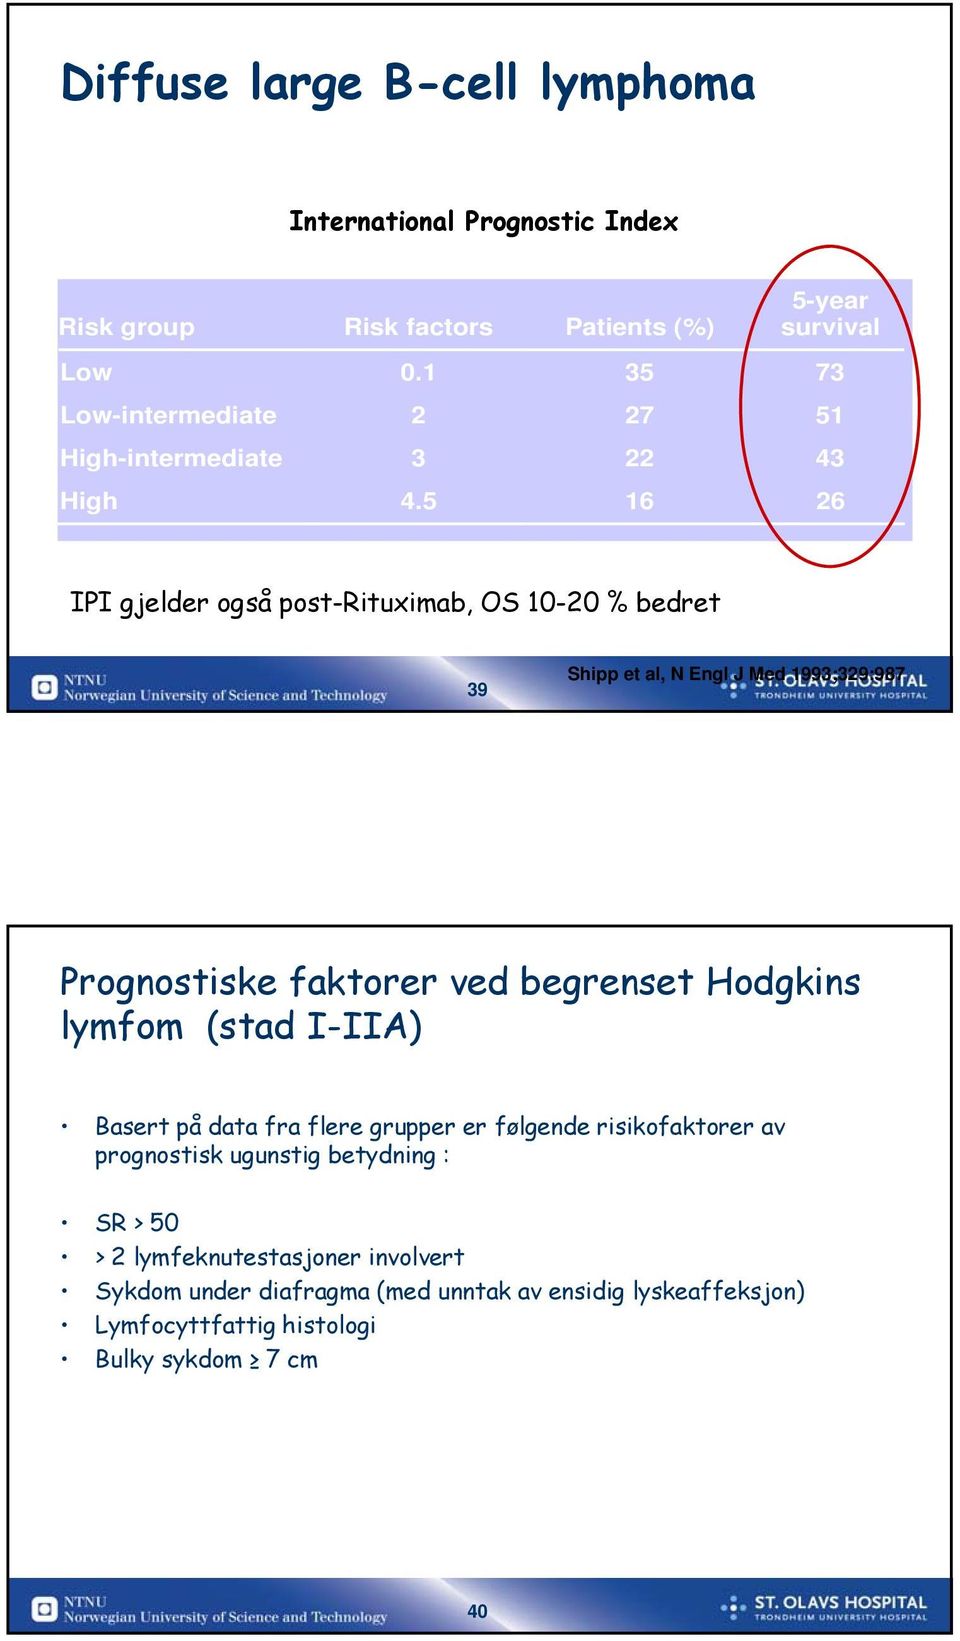 5 16 26 IPI gjelder også post-rituximab, OS 10-20 % bedret 39 Shipp et al, N Engl J Med 1993;329:987 Prognostiske faktorer ved begrenset Hodgkins